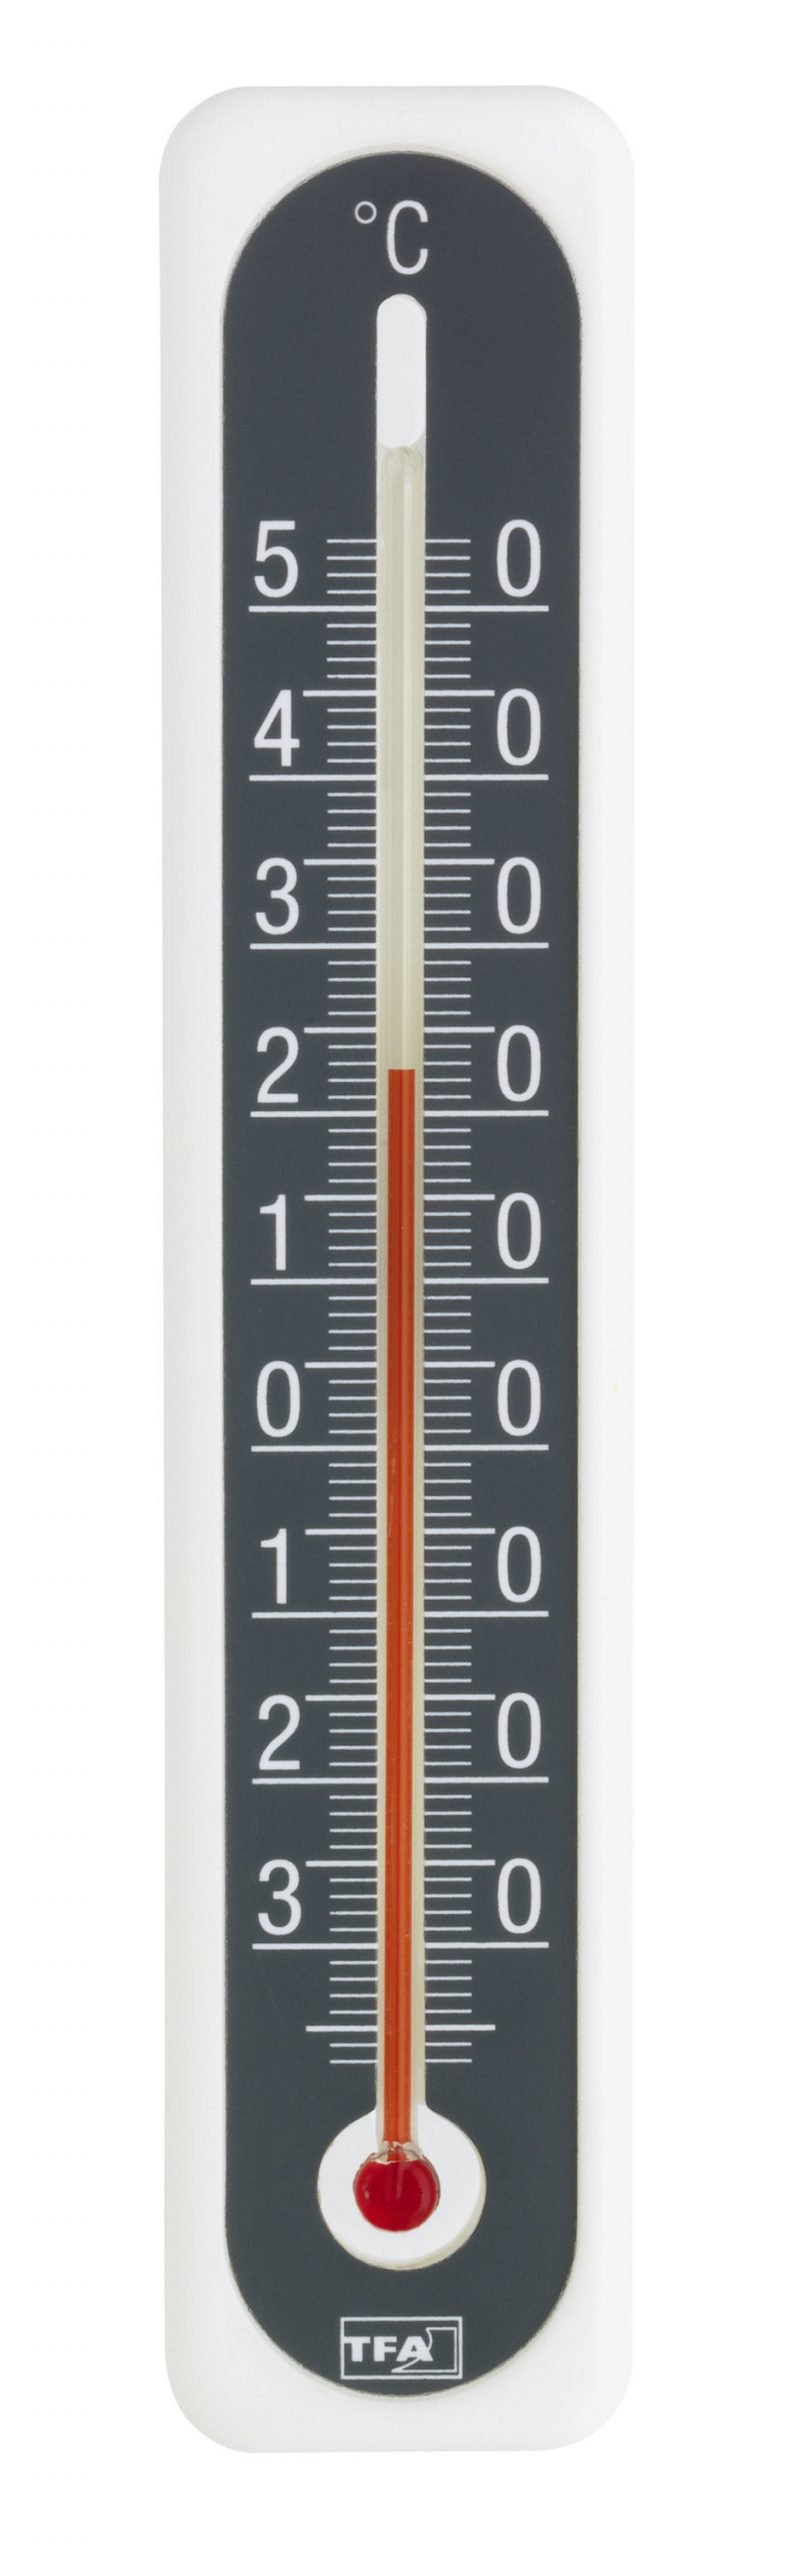 Термометр рисунок